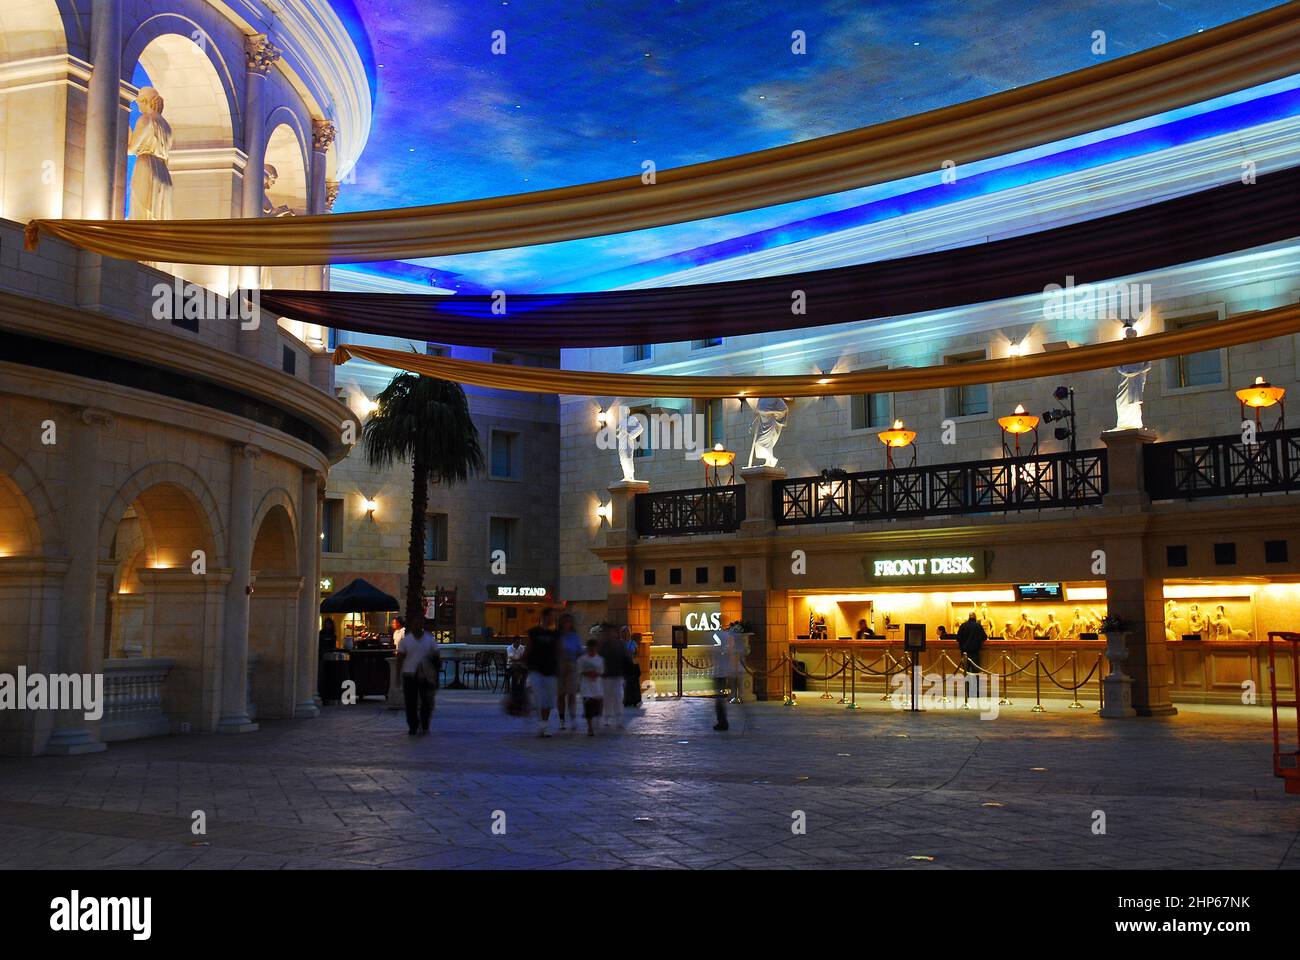 La lobby principale del Caesar’s Casino di Atlantic City, NJ, è decorata in un tema antico romano Foto Stock